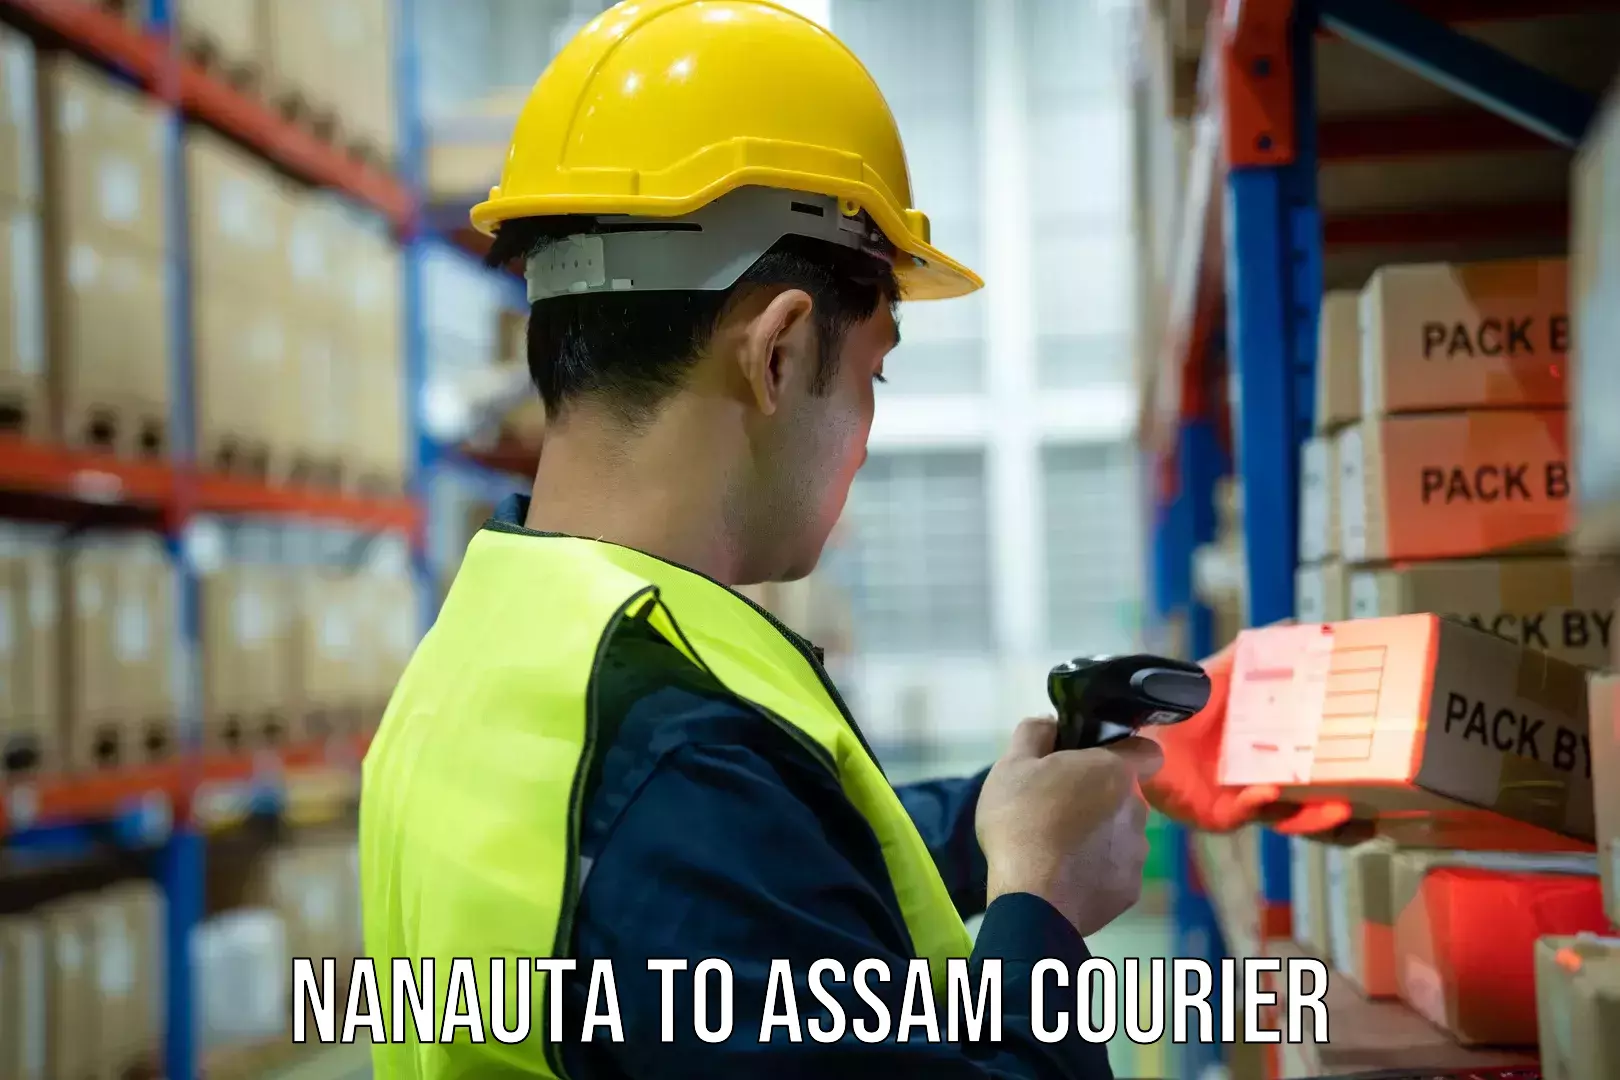 Efficient parcel service Nanauta to Cachar